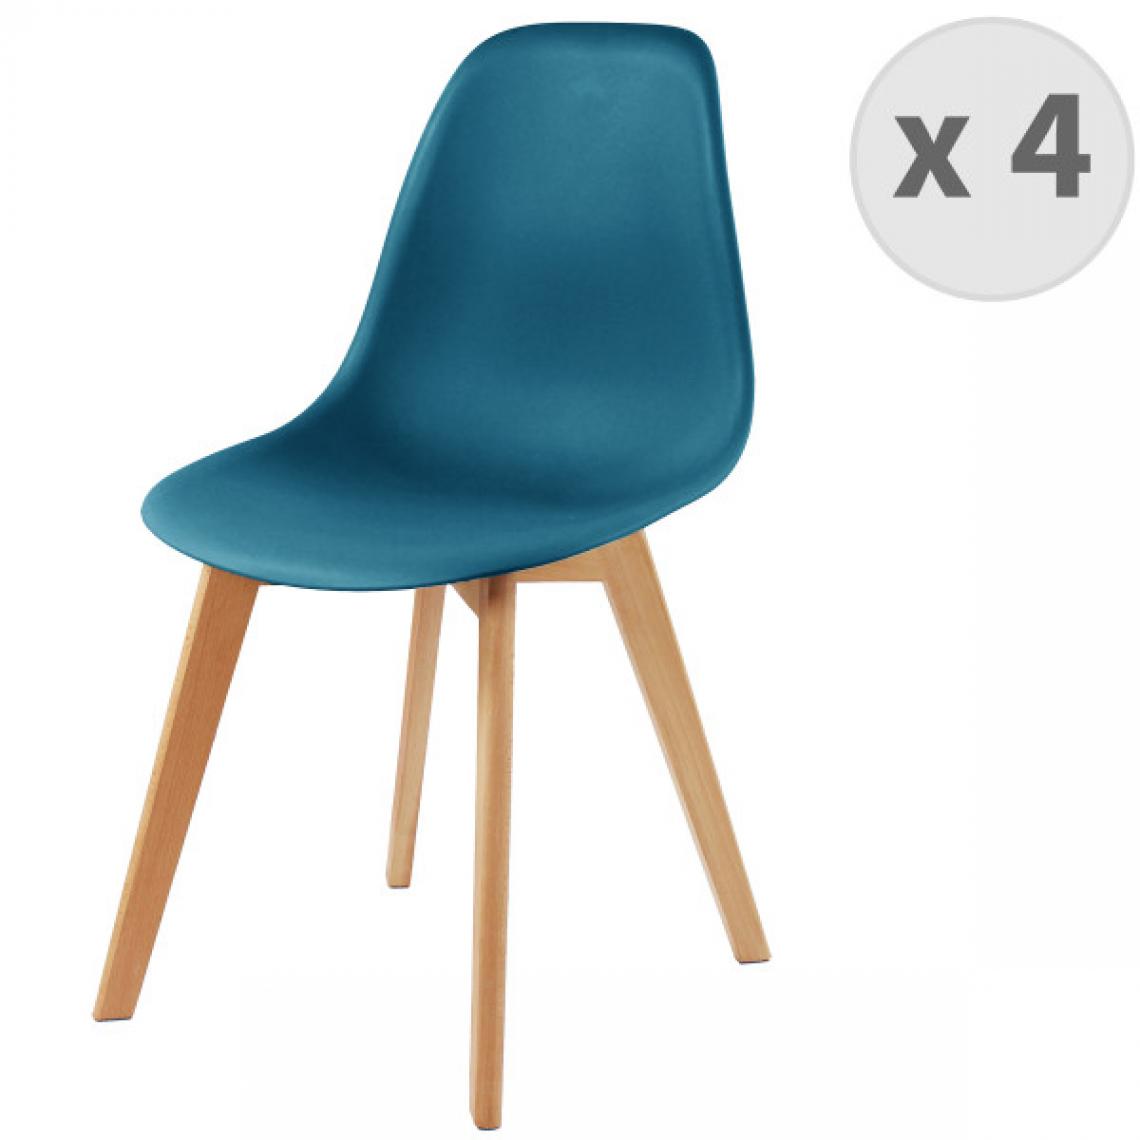 Moloo - LENA-Chaise scandinave bleu canard pied hêtre (x4) - Chaises